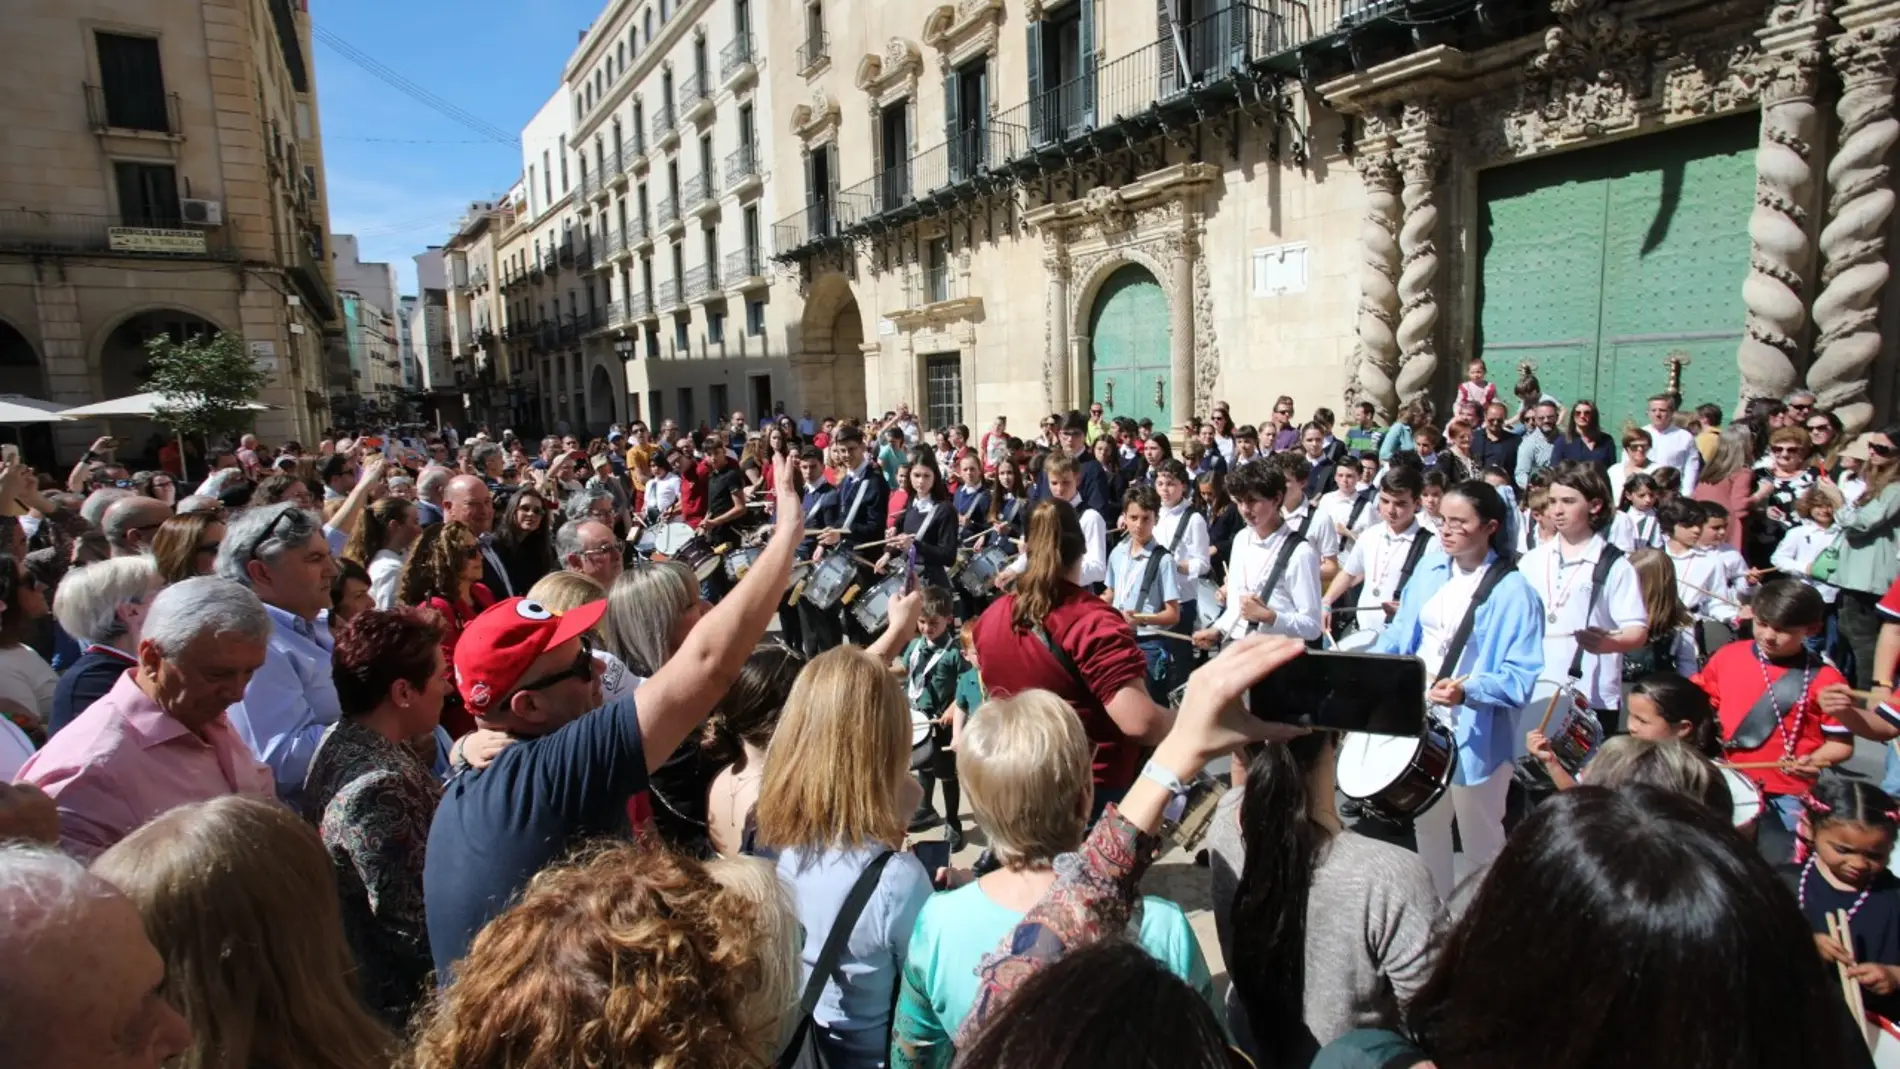 La ya tradicional Tamborrada da comienzo al ambiente de Semana Santa en Alicante